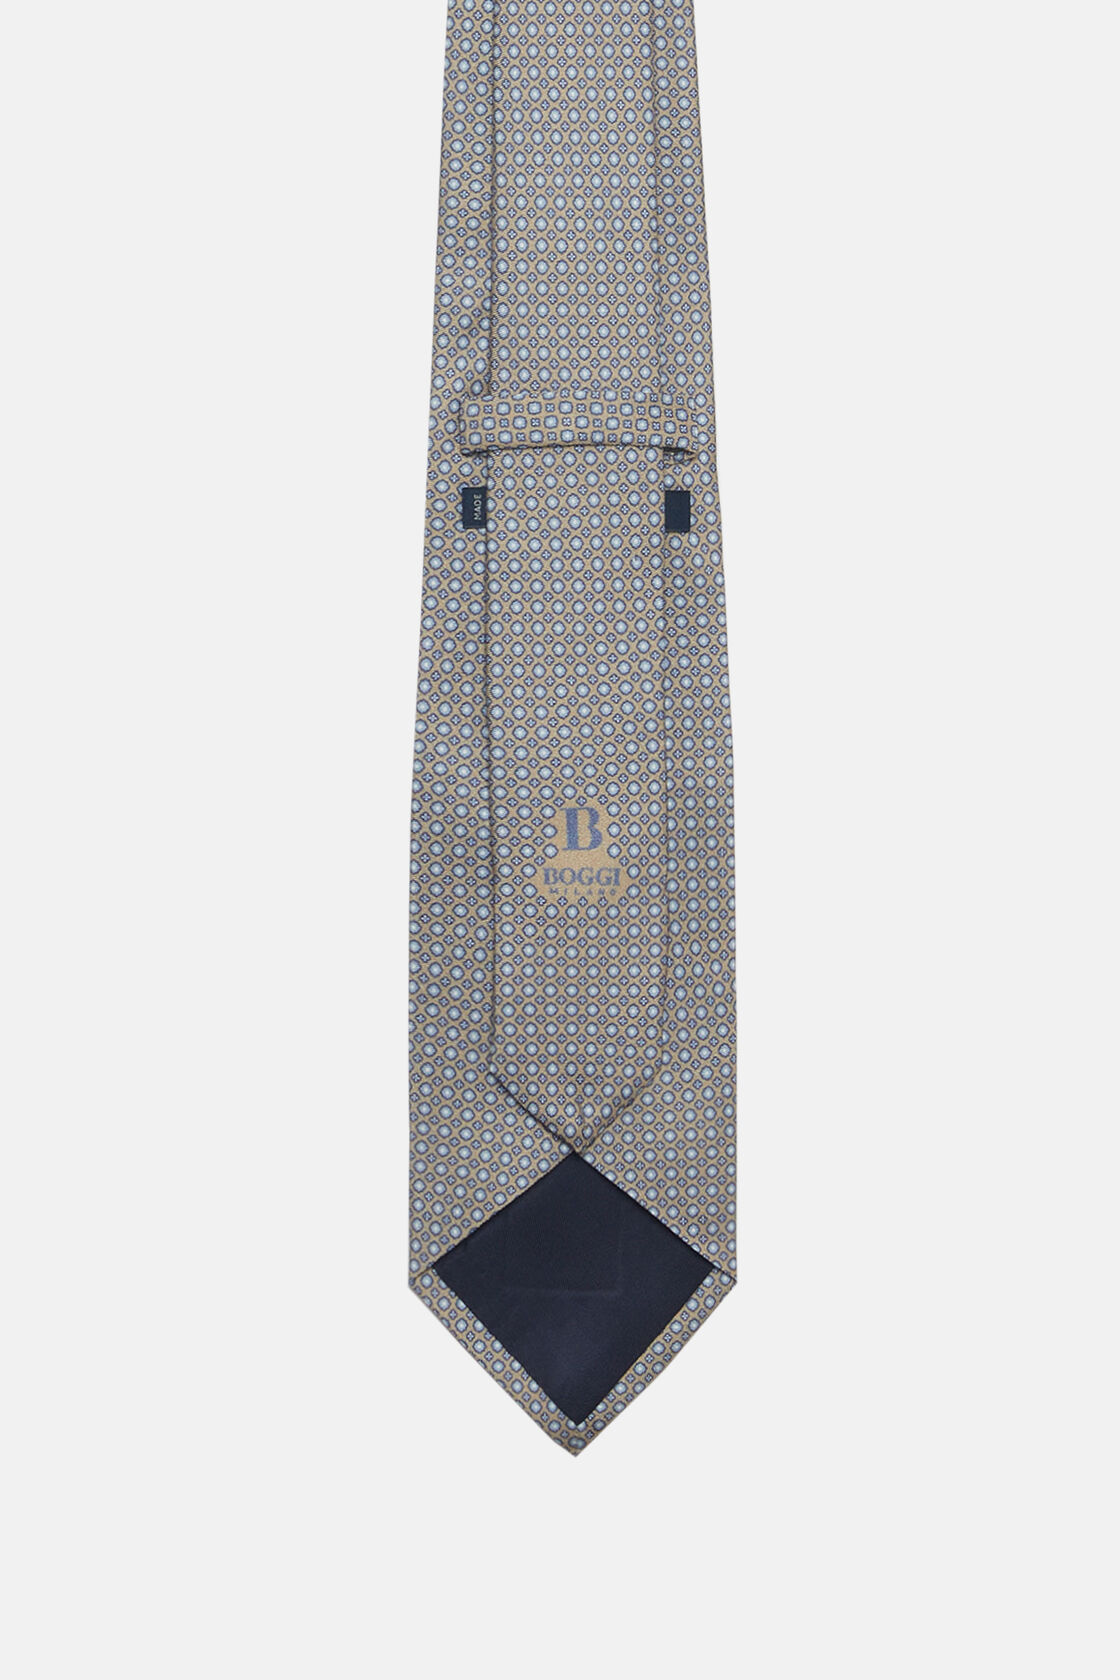 Μεταξωτή γραβάτα με φλοράλ σχέδιο, Taupe, hi-res